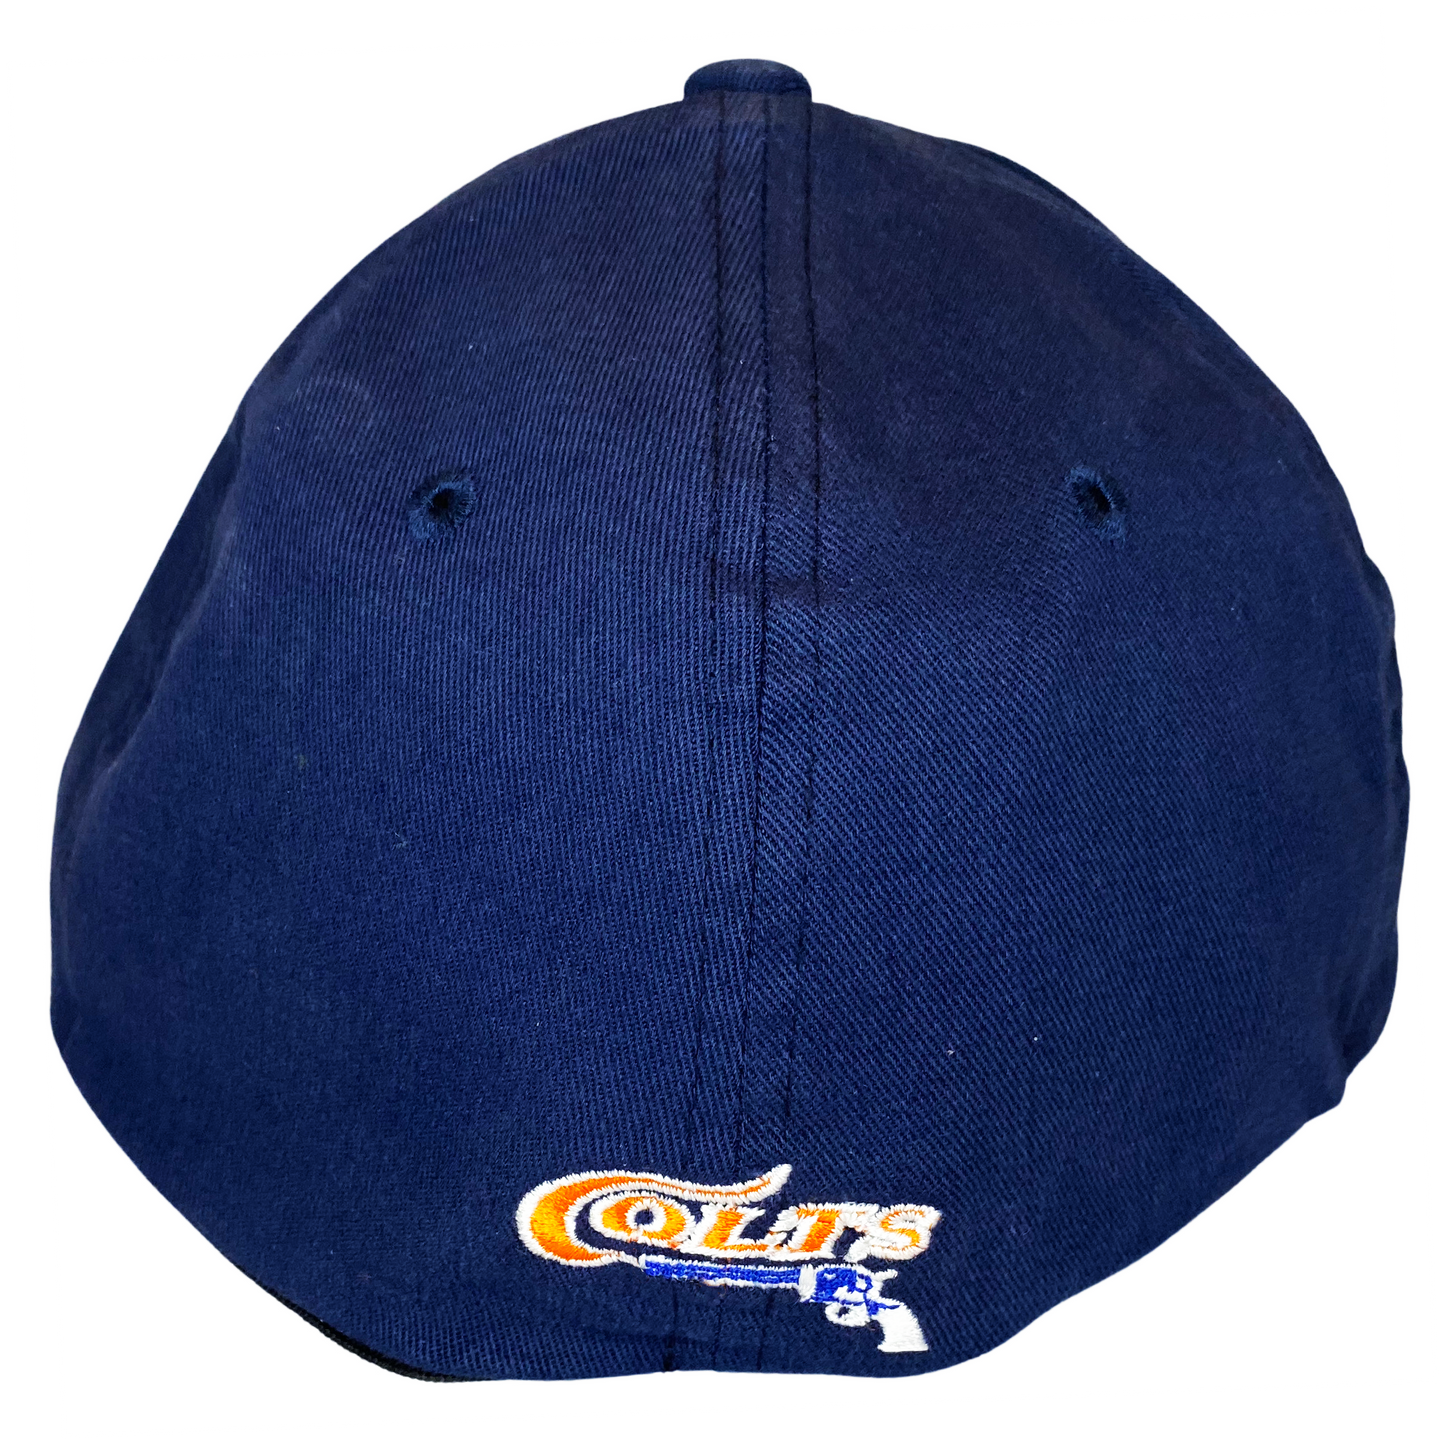 Houston Colt 45's Flex Hat